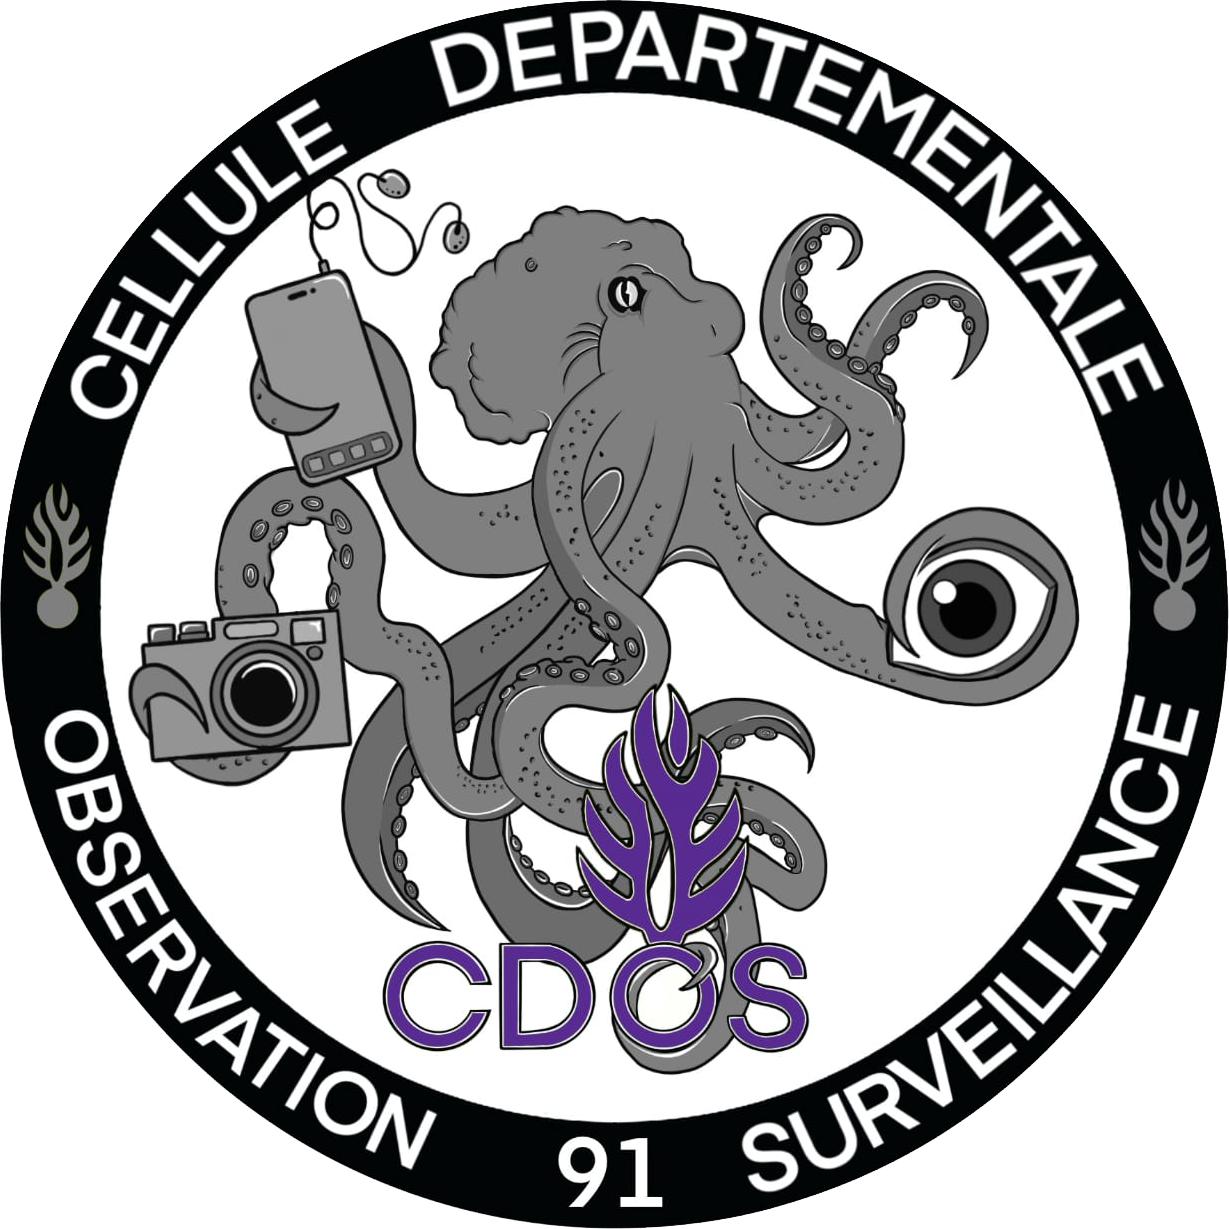 Rondache Cellule Départementale d'Observation et de Surveillance